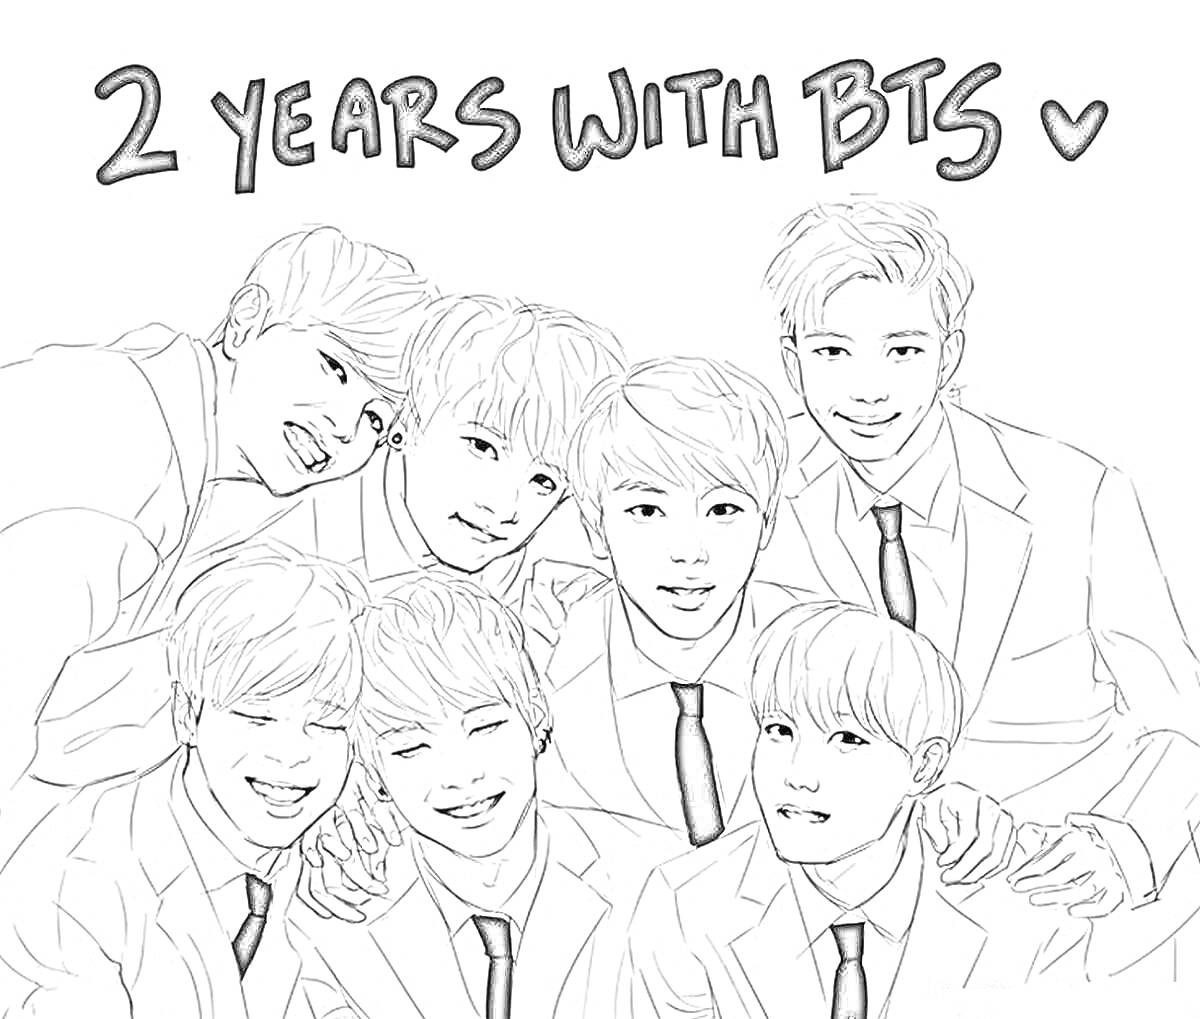 2 years with BTS, черно-белый портрет семи мужчин в костюмах с галстуками, один с поднятой рукой